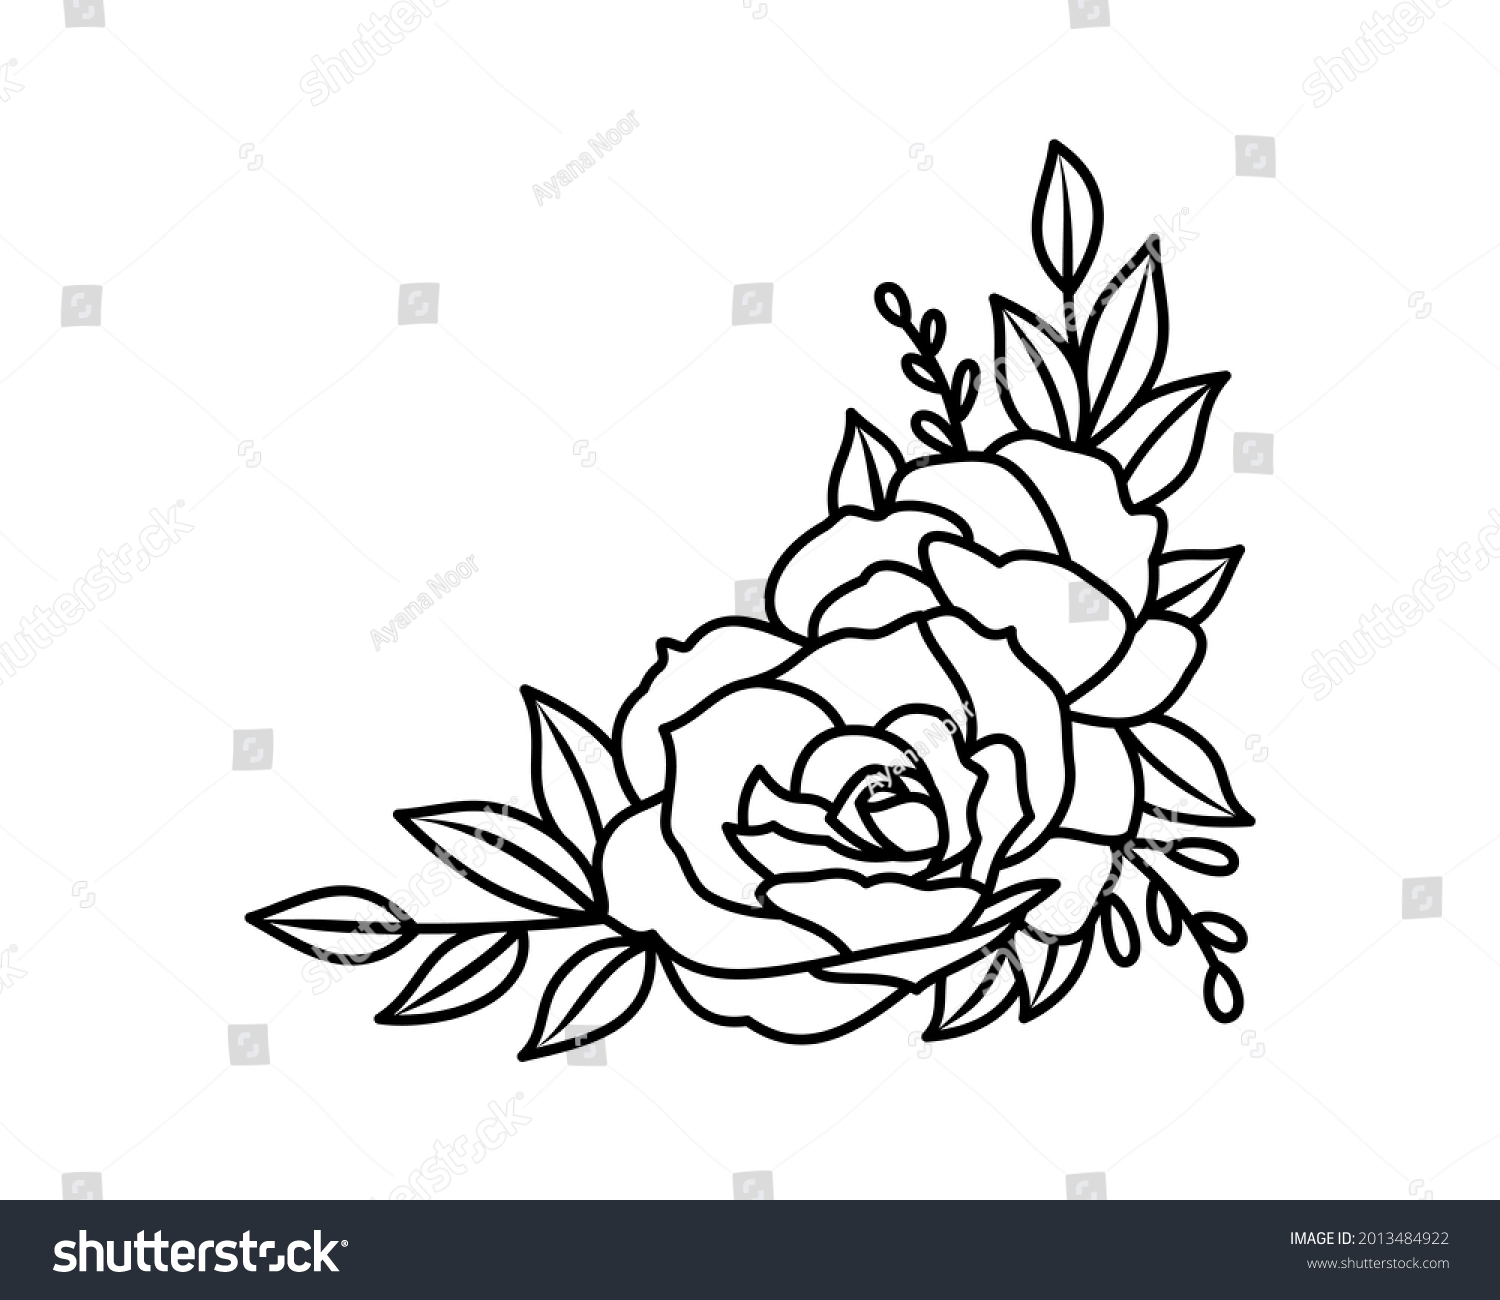 SVG of Rose flower corner decorative bouquet line design element. Black and white vector illustration svg